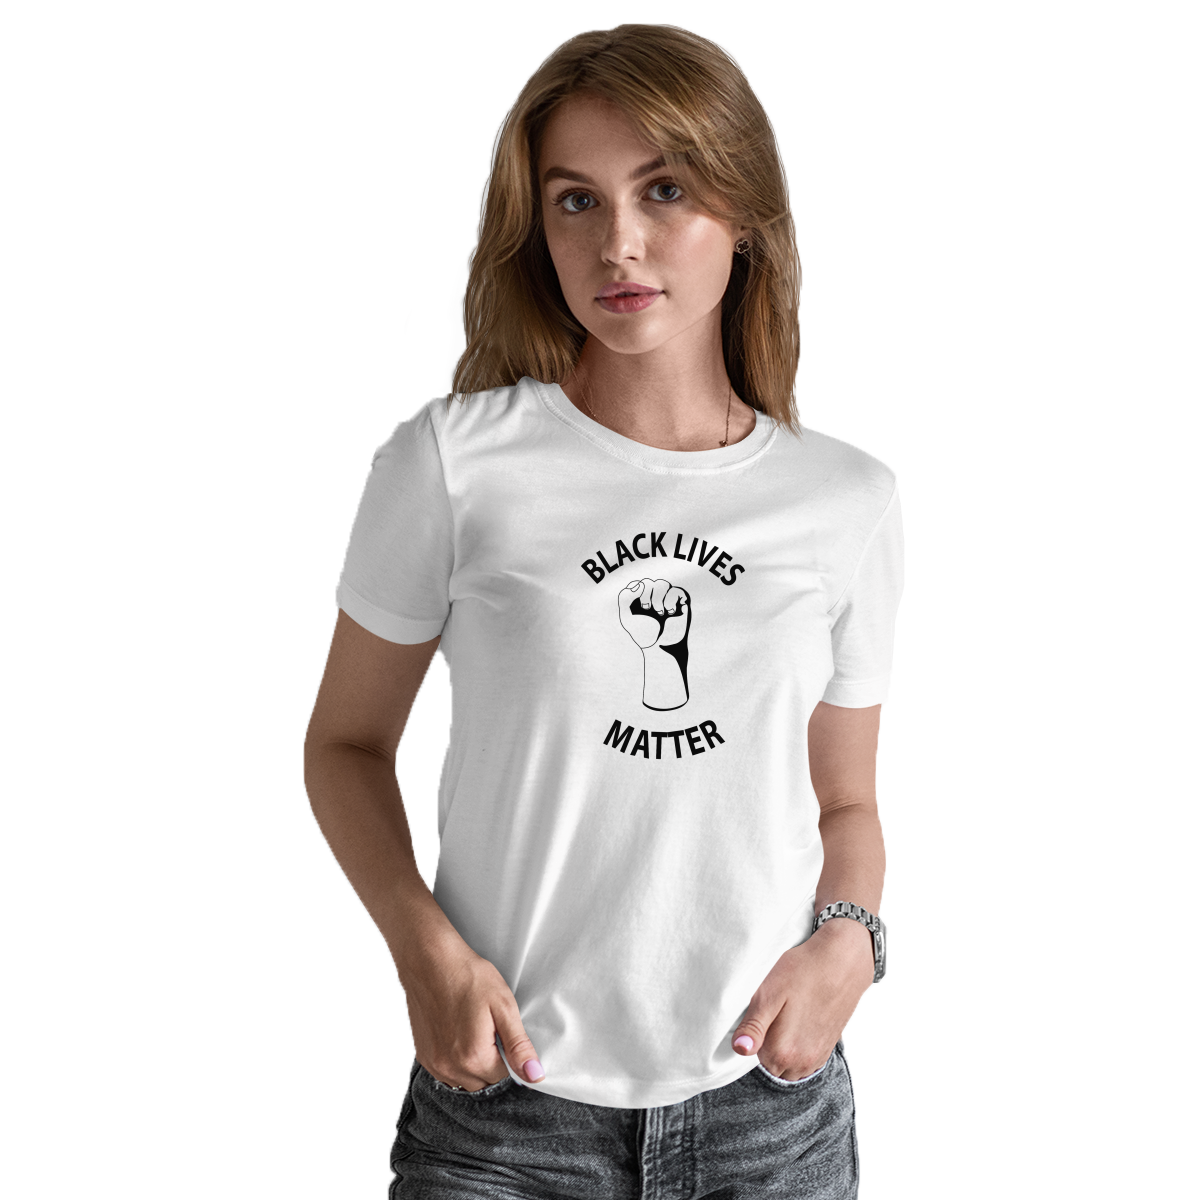 Black Lives Matter Women's T-shirt | White